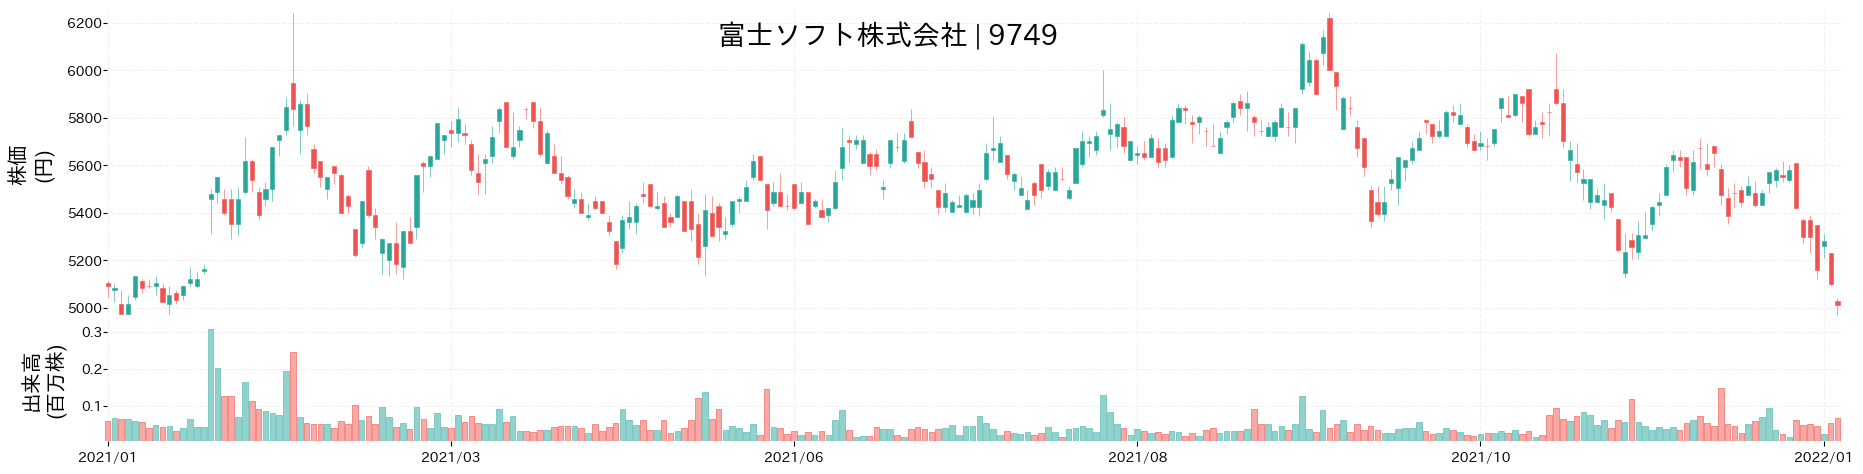 富士ソフトの株価推移(2021)